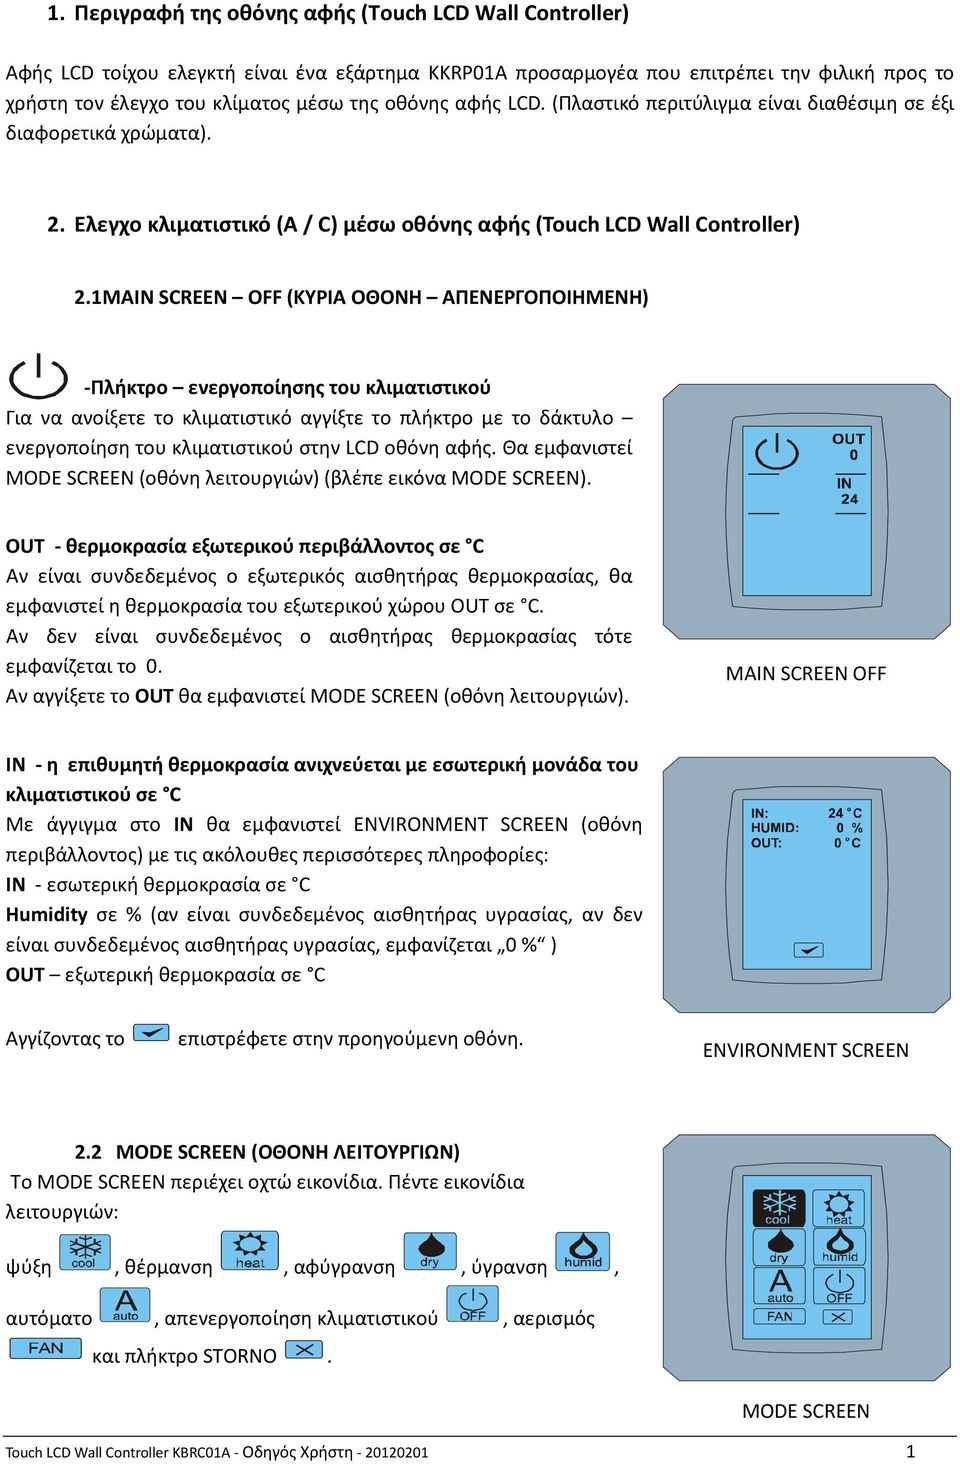 1 MAIN SCREEN OFF (ΚΥΡΙΑ ΟΘΟΝΗ ΑΠΕΝΕΡΓΟΠΟΙΗΜΕΝΗ) -Πλήκτρο ενεργοποίησης του κλιματιστικού Για να ανοίξετε το κλιματιστικό αγγίξτε το πλήκτρο με το δάκτυλο ενεργοποίηση του κλιματιστικού στην LCD